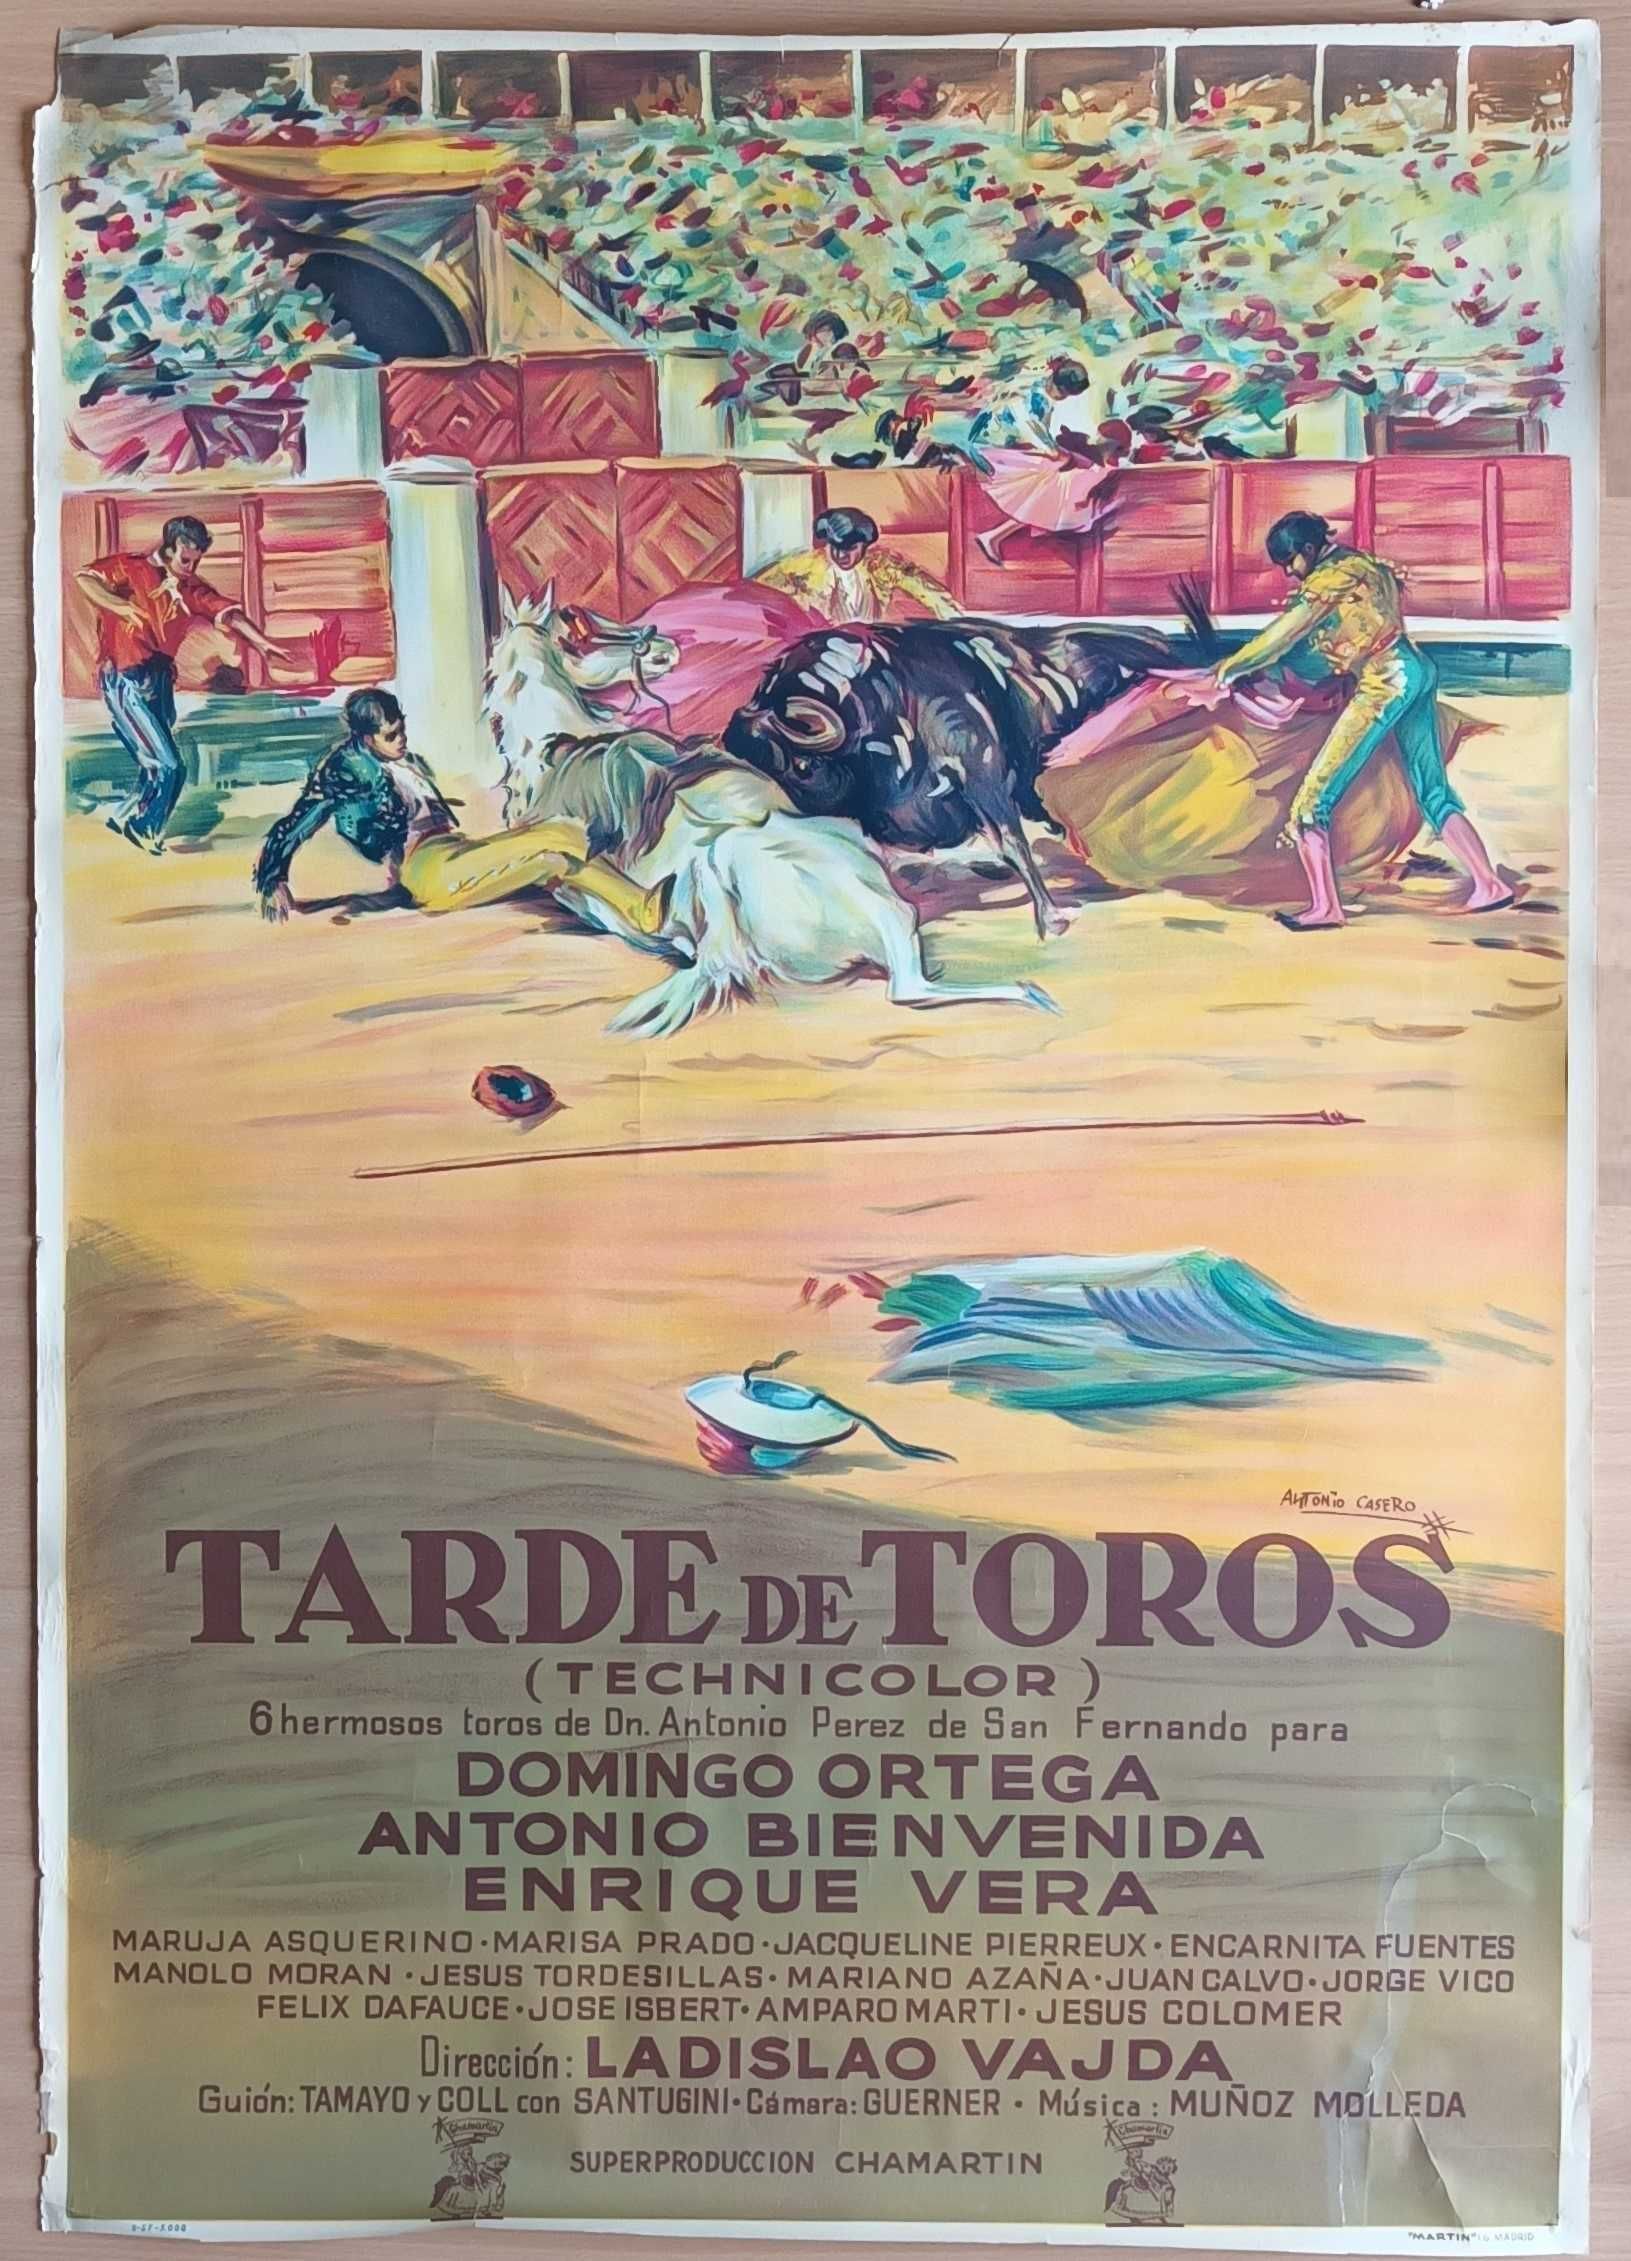 Tarde De Toros CARTAZ ORIGINAL POSTER [1956] Tourada arte tauromaquia